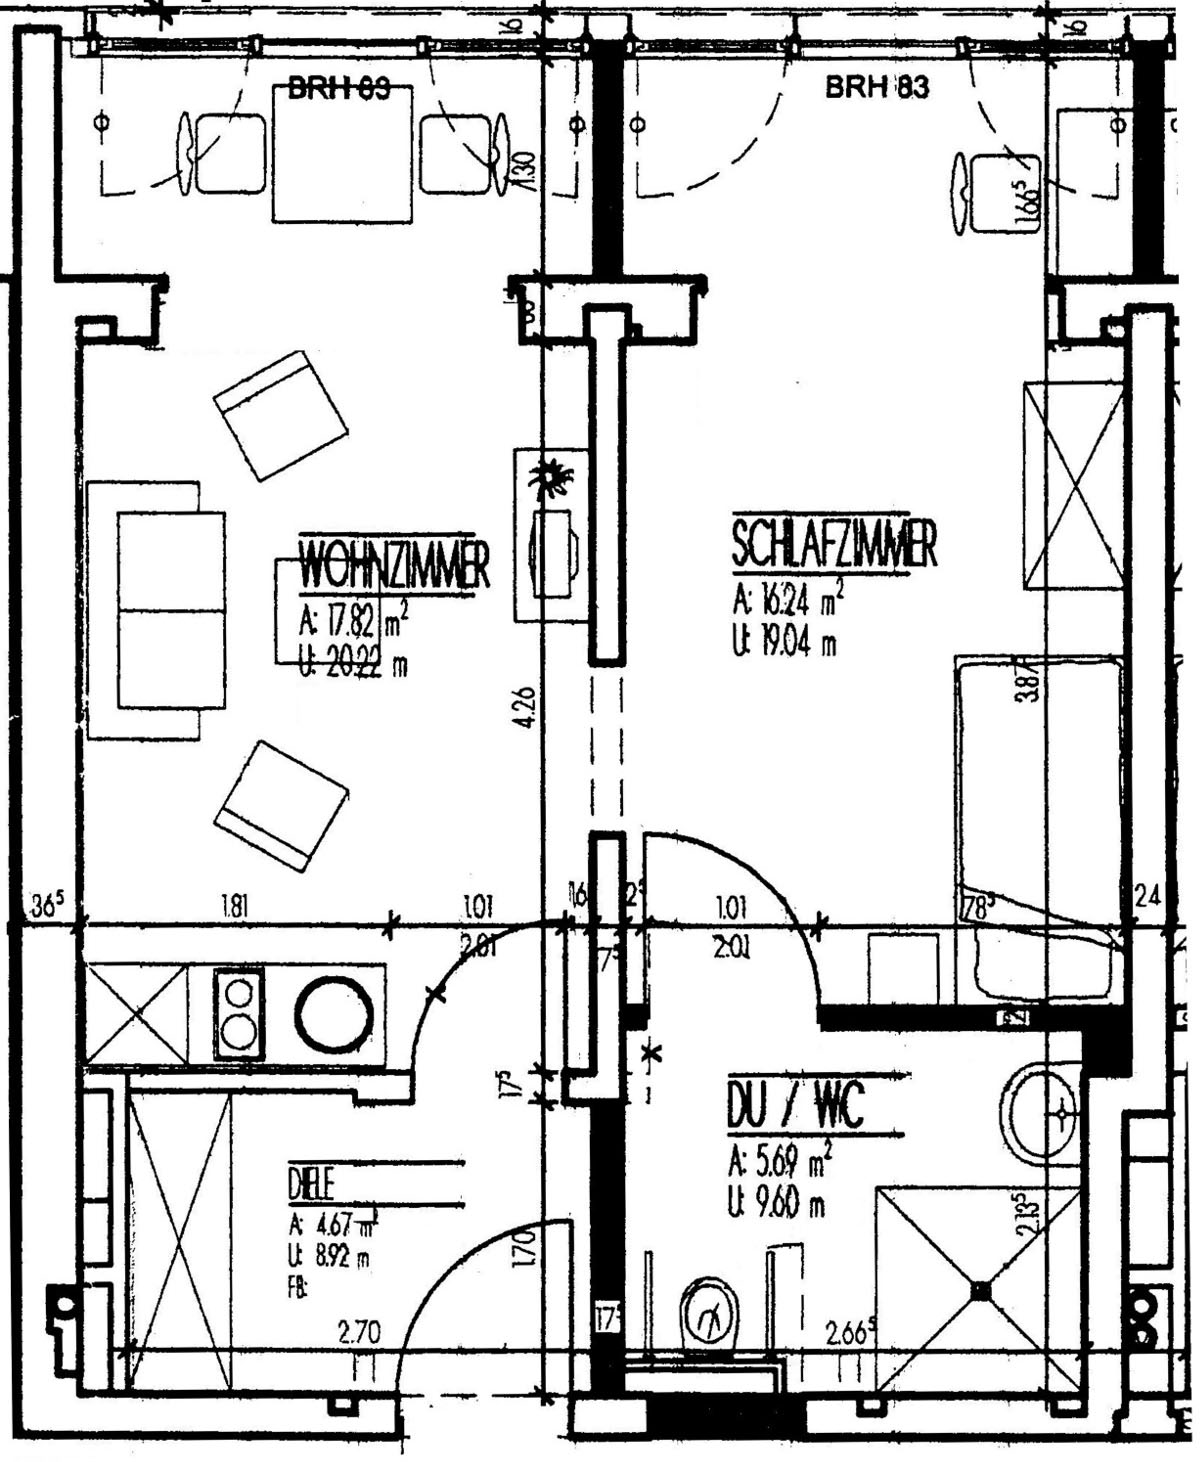 Appartement 2 + 4 EG, 2 Zimmer